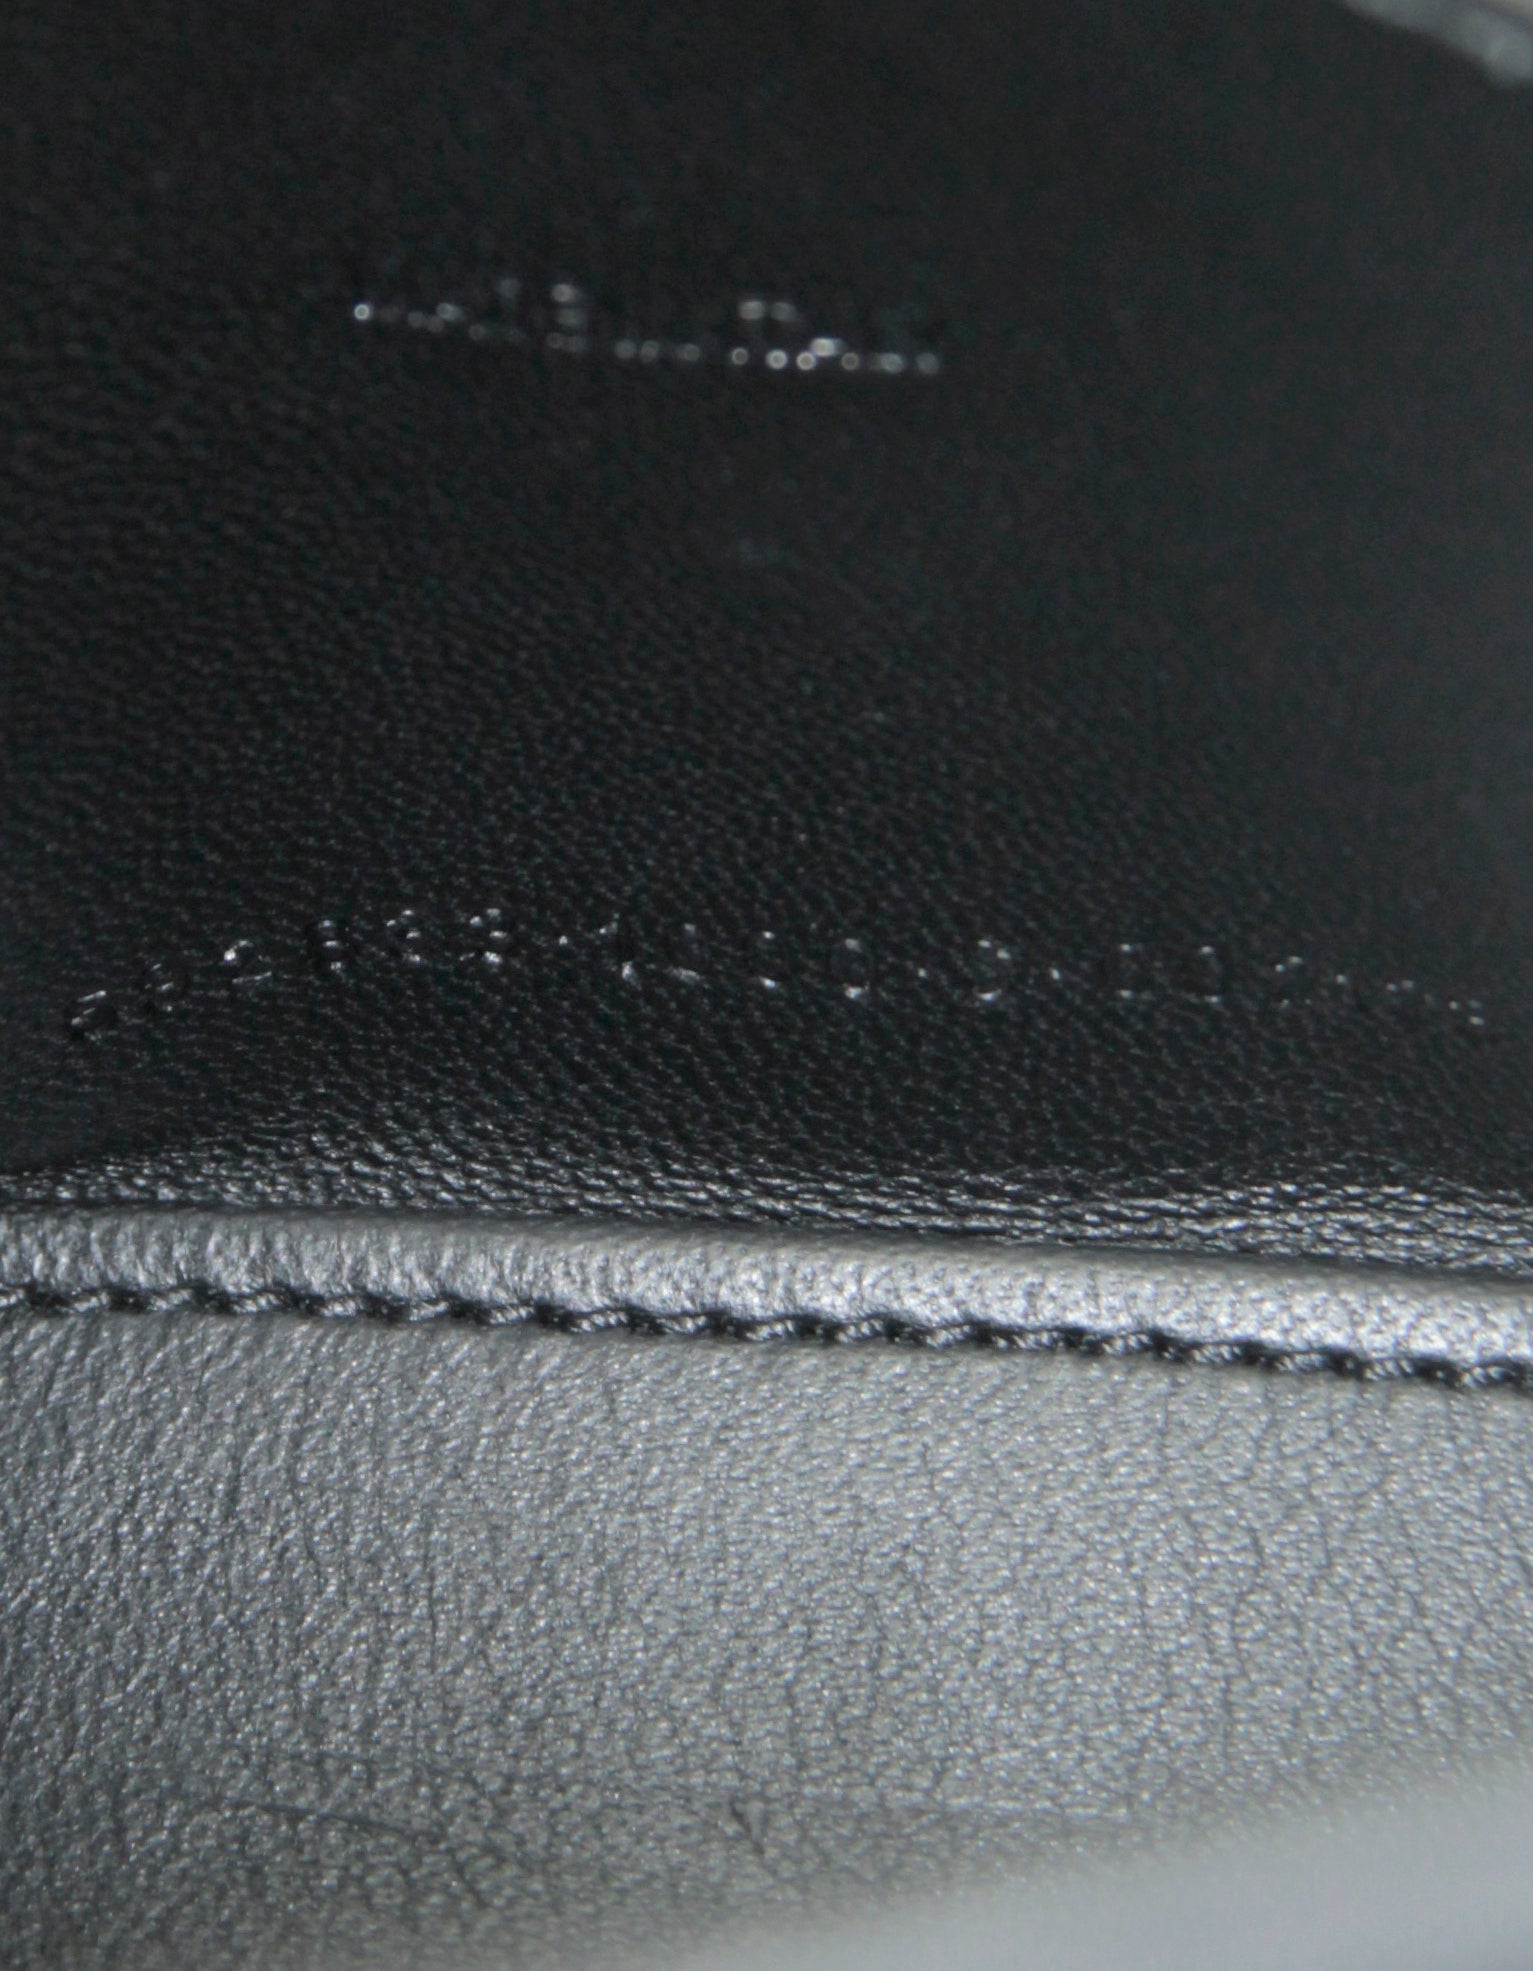 Balenciaga Black Embossed Crocodile Hourglass XS Top Handle Crossbody Bag